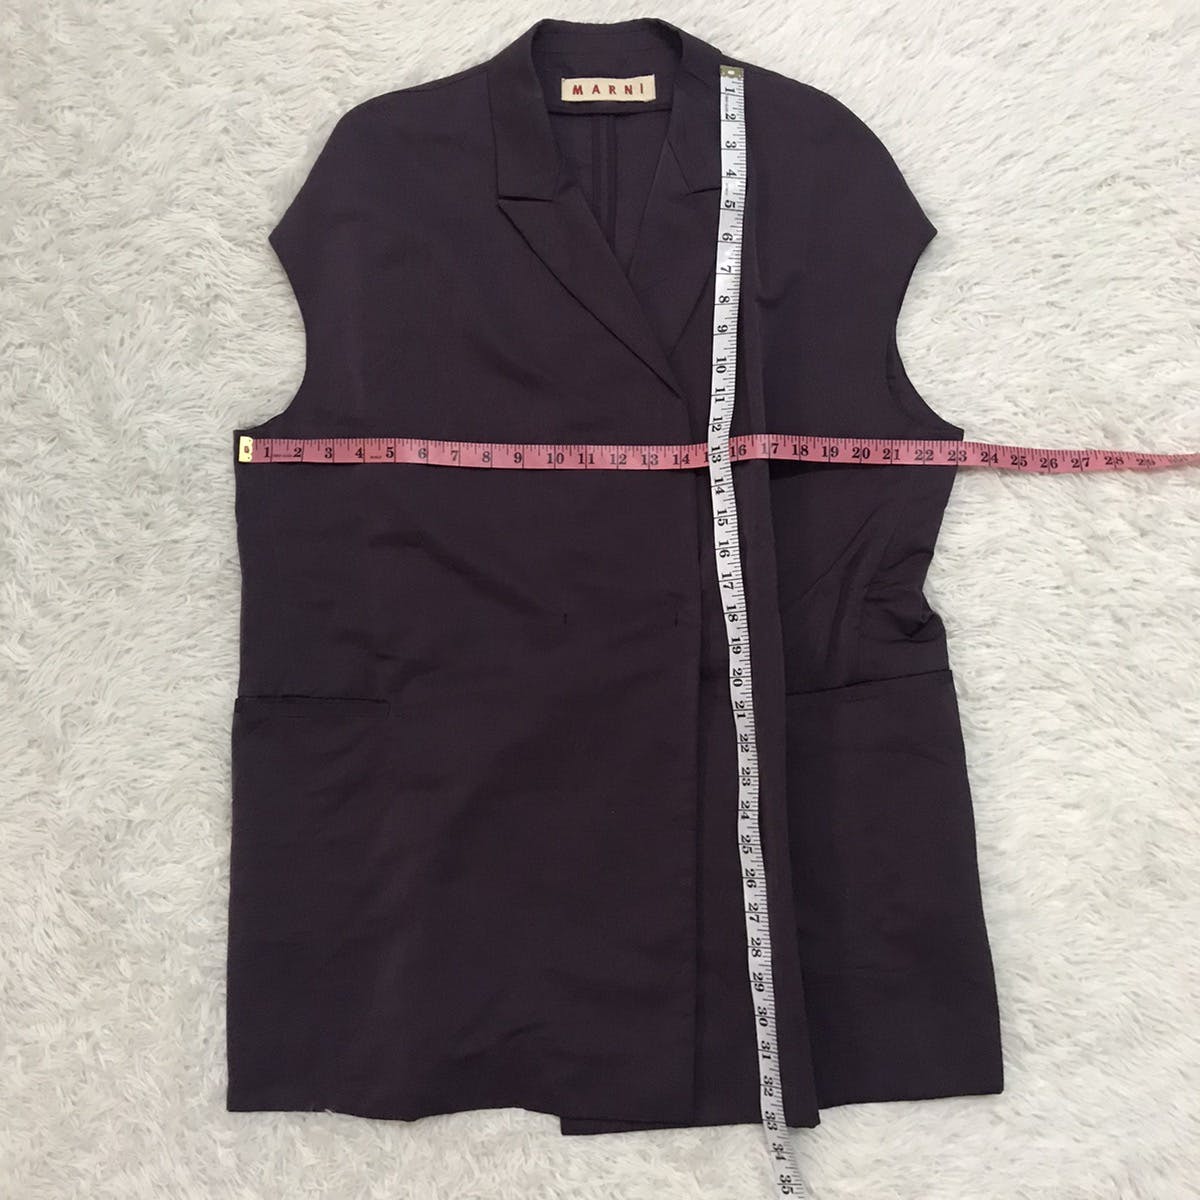 Marni Women Sleeveless Jacket Style Made in Italy - 15